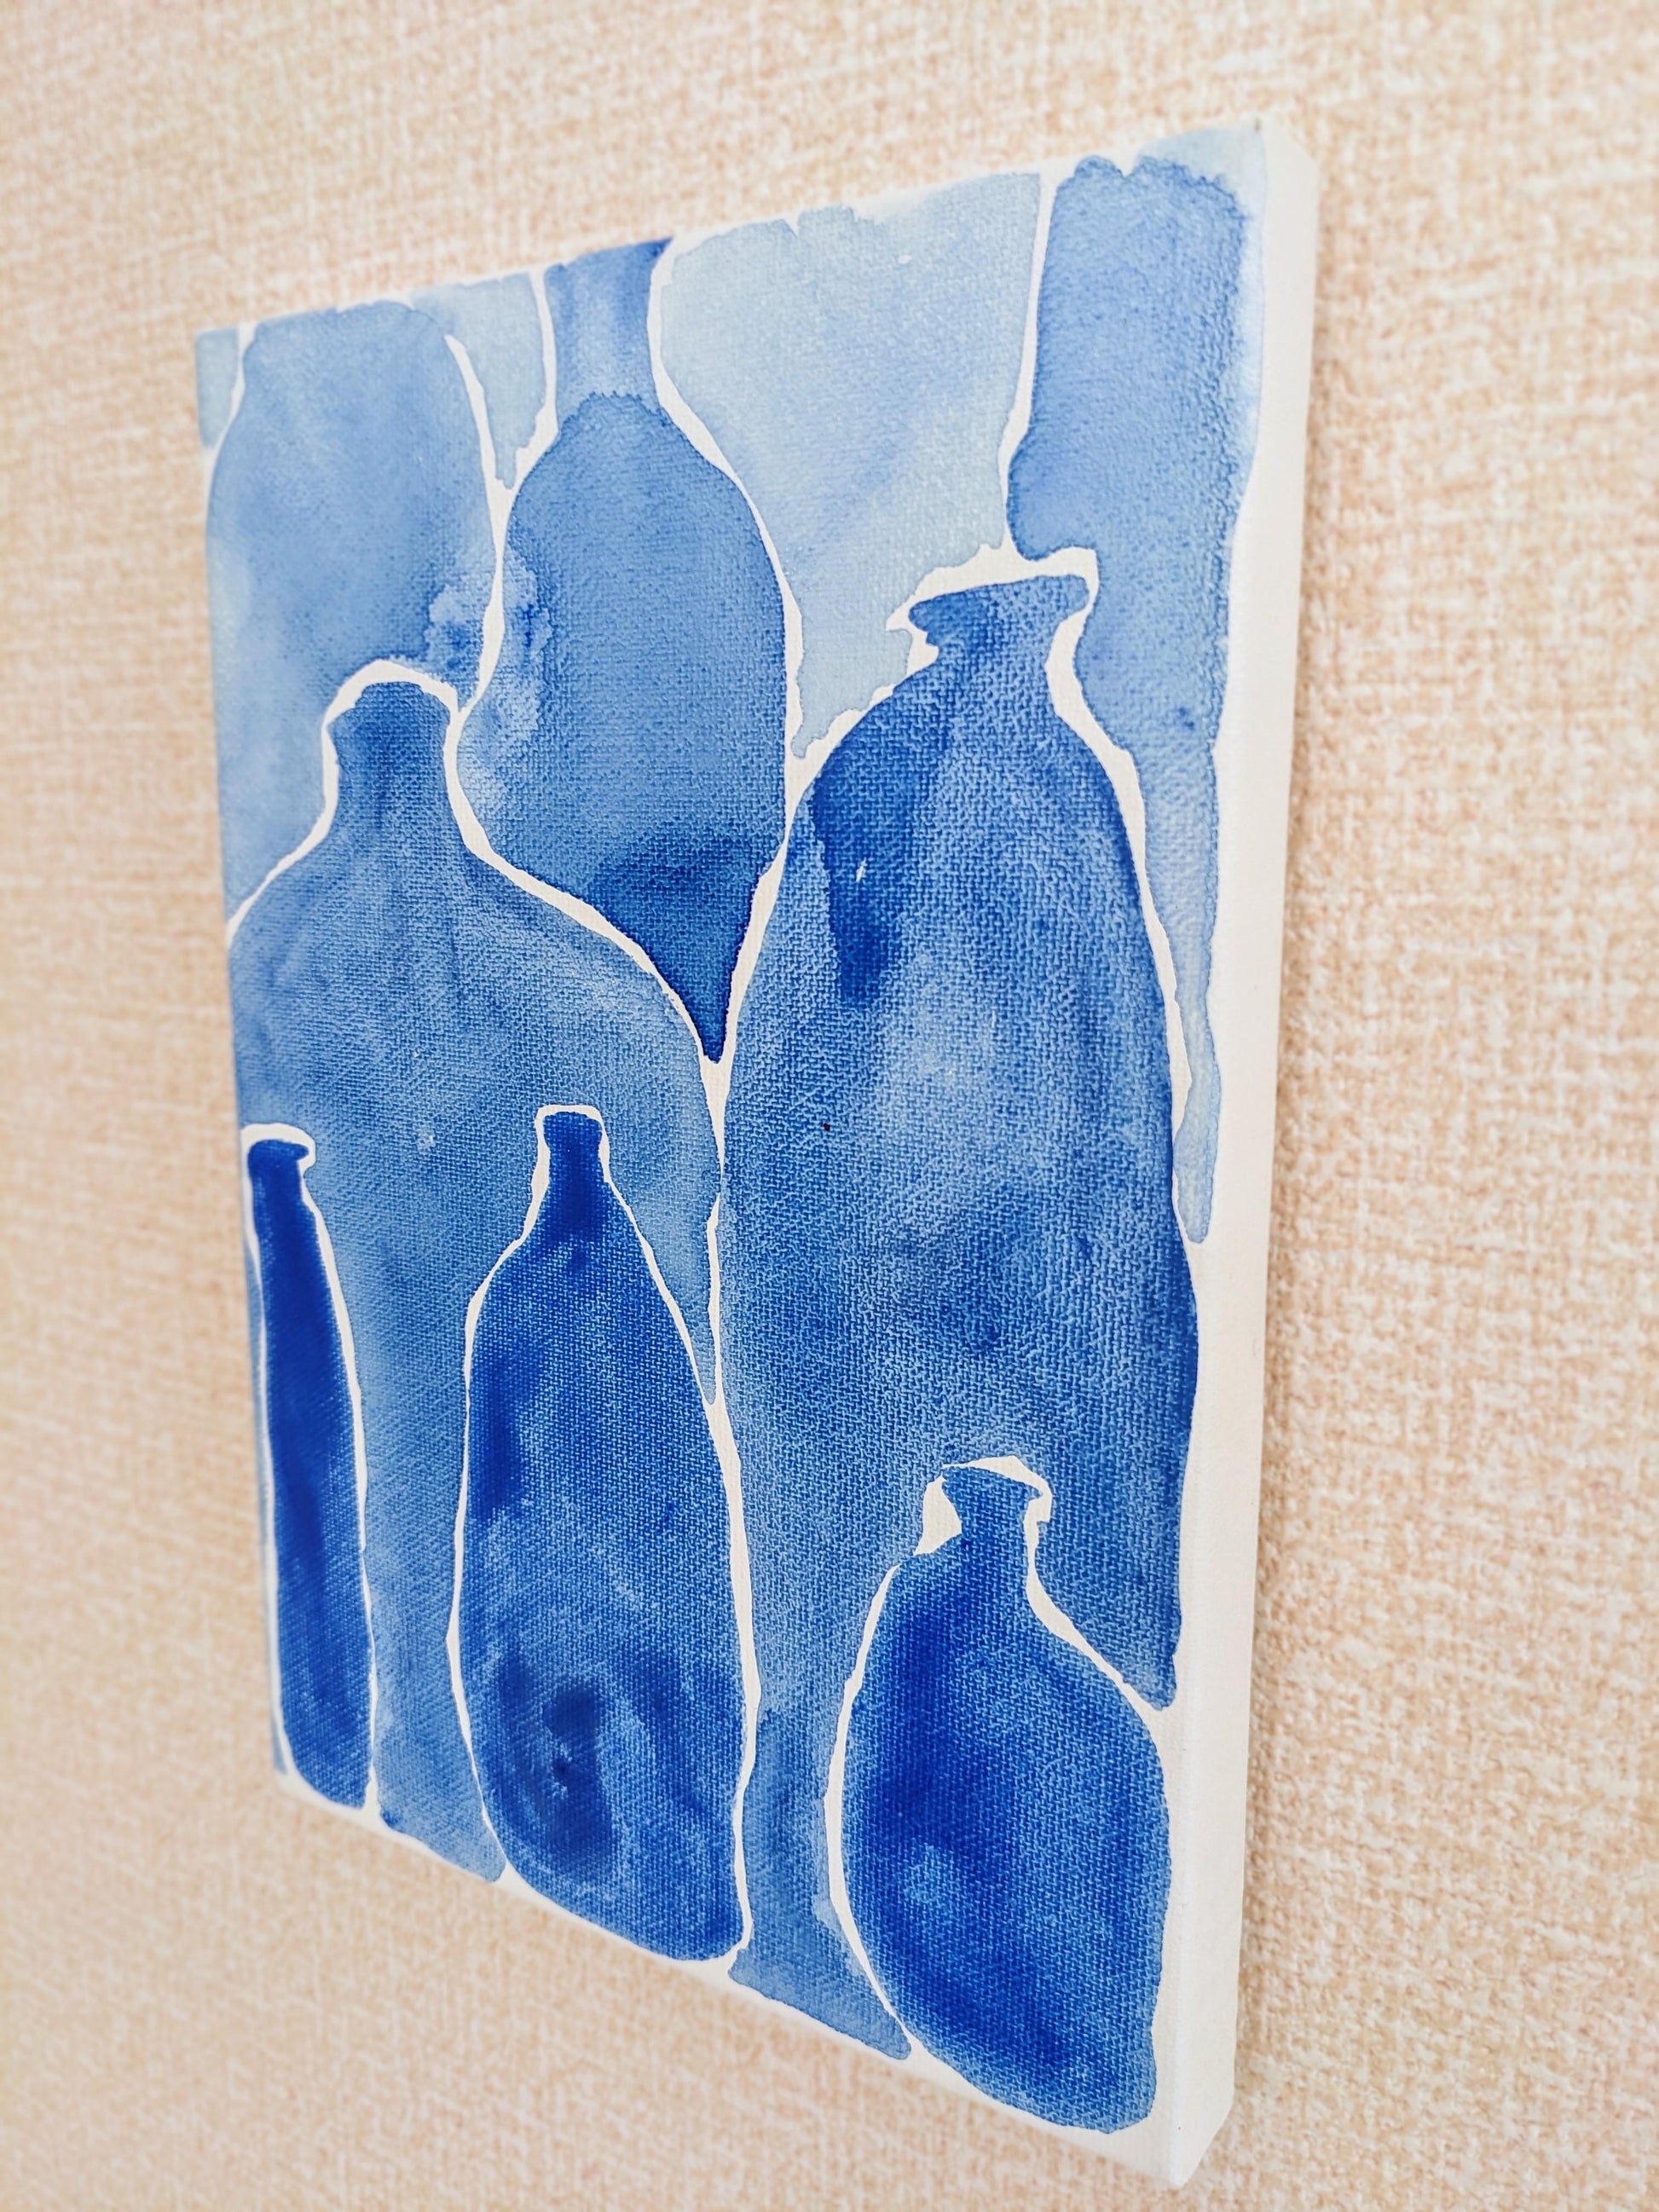 『ブルー・ボトル(Blue bottles)』 - FROM ARTIST